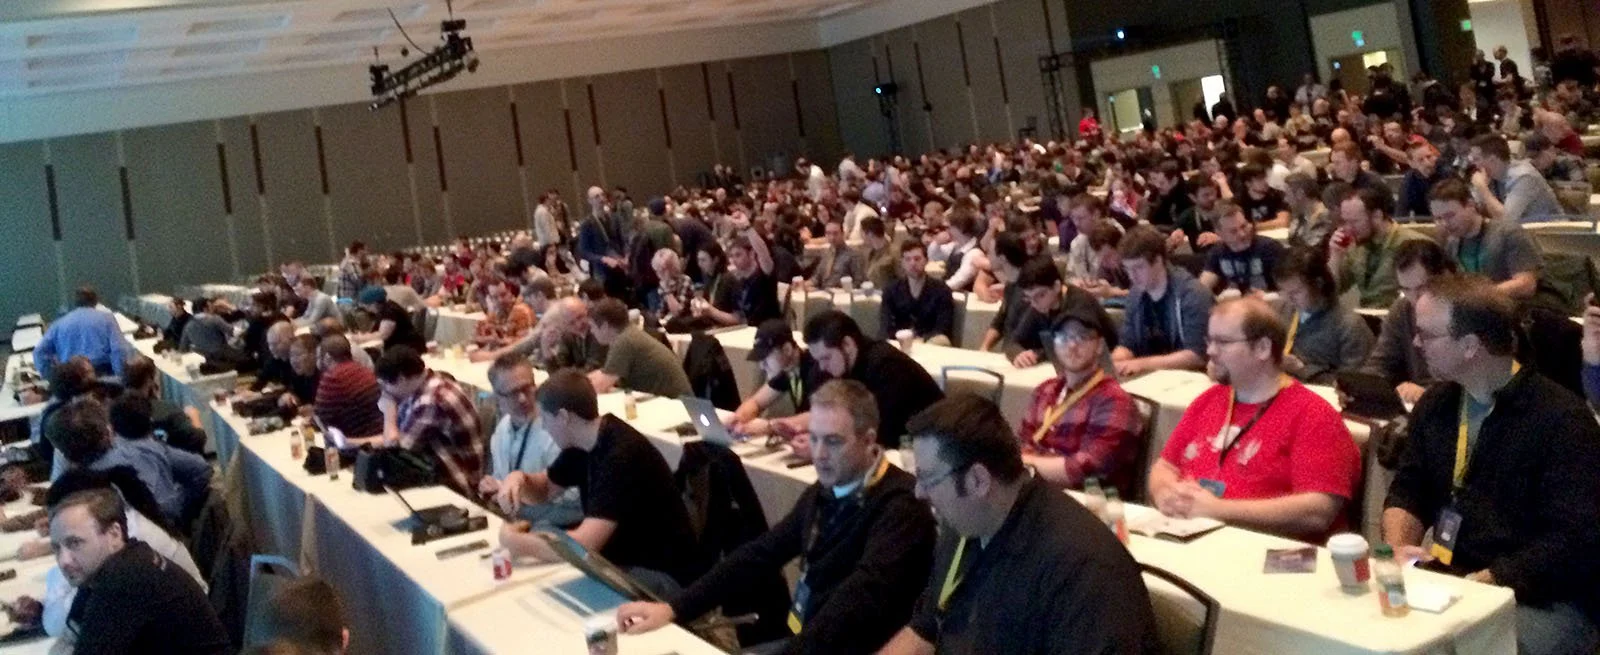 Аудитория перед открытием конференции (Steam Dev Days проходила в том же здании Washington State Convention Center, где каждый год проходит PAX Prime).